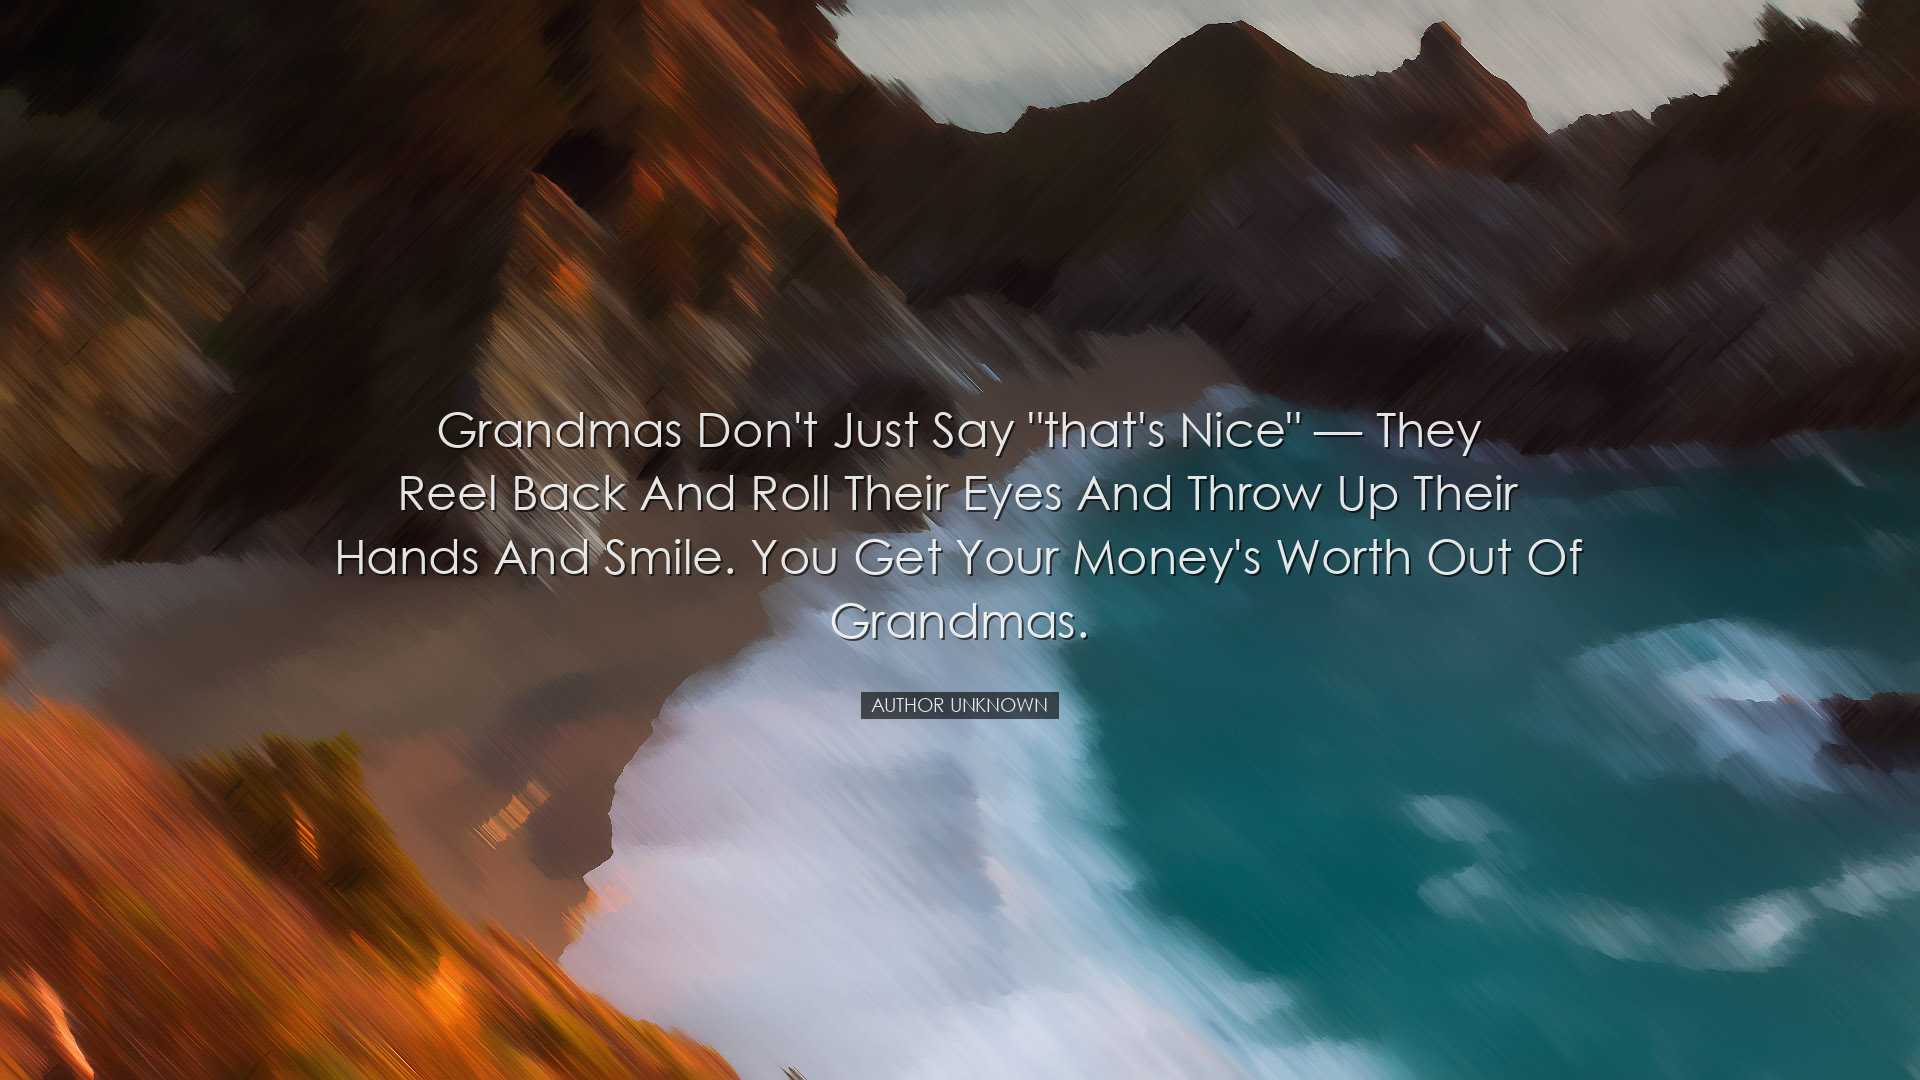 Grandmas don't just say 